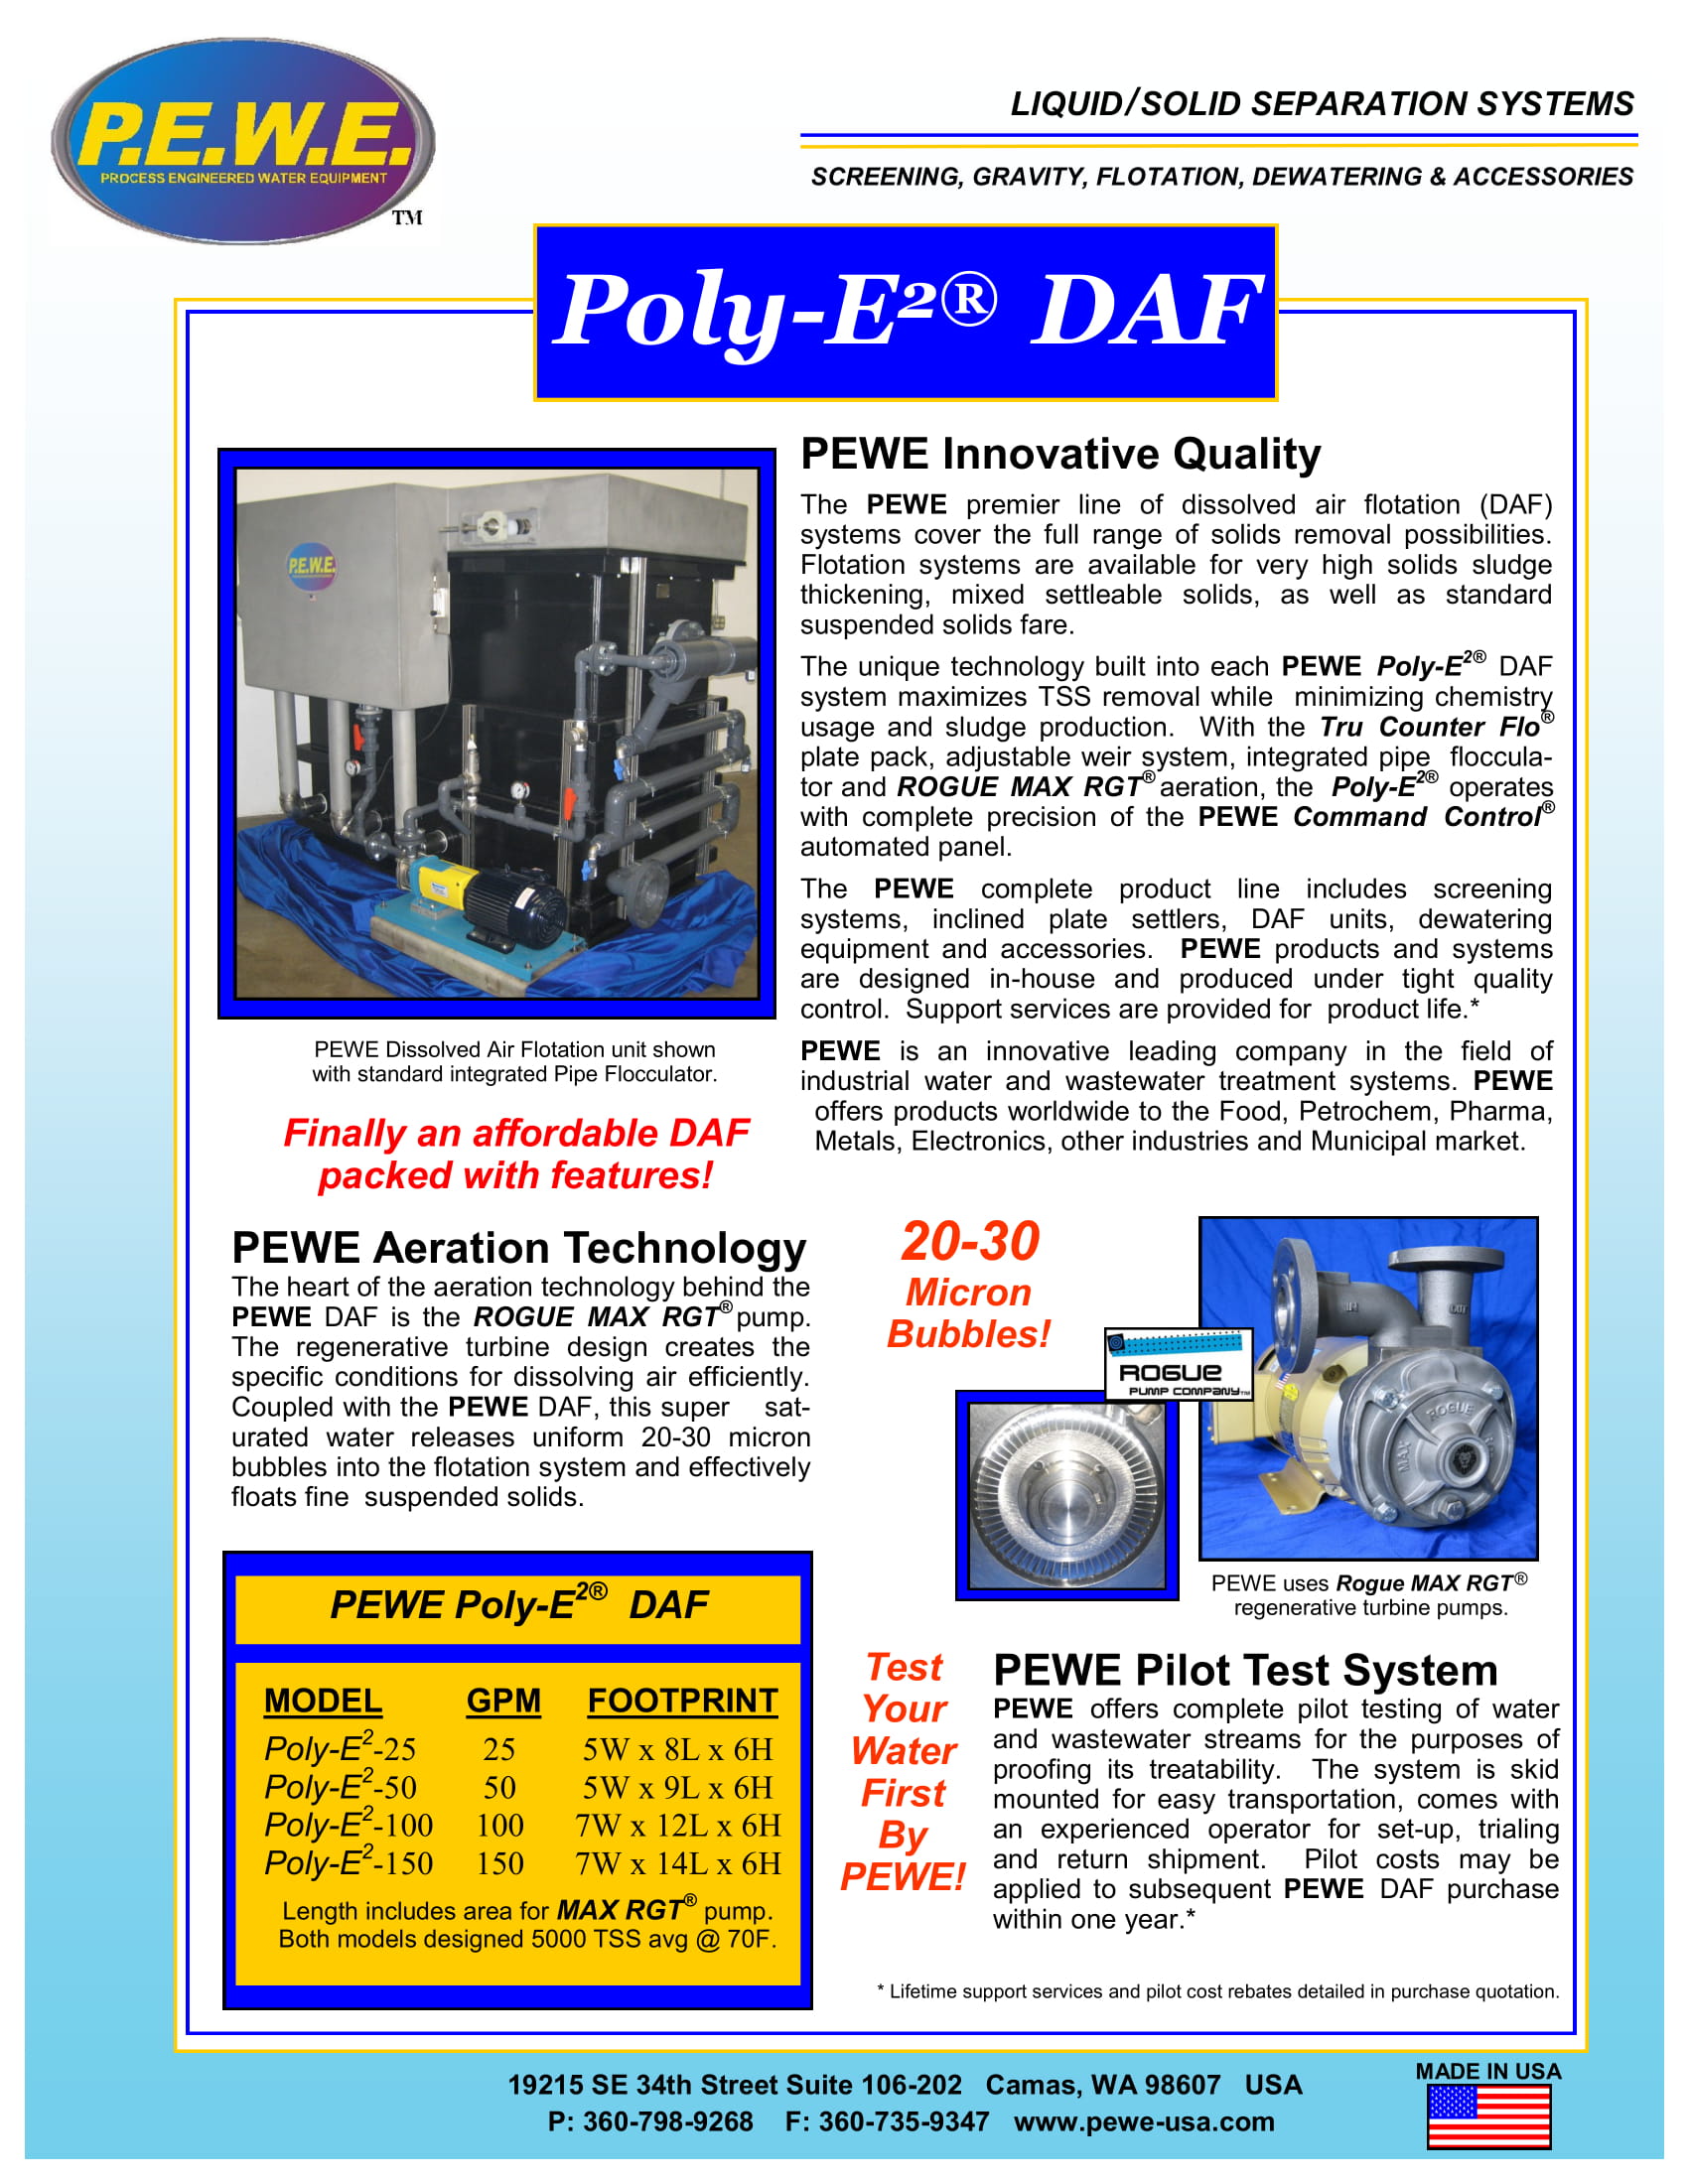 PEWE-Poly-E-DAF-Brochure-051719-1.jpg